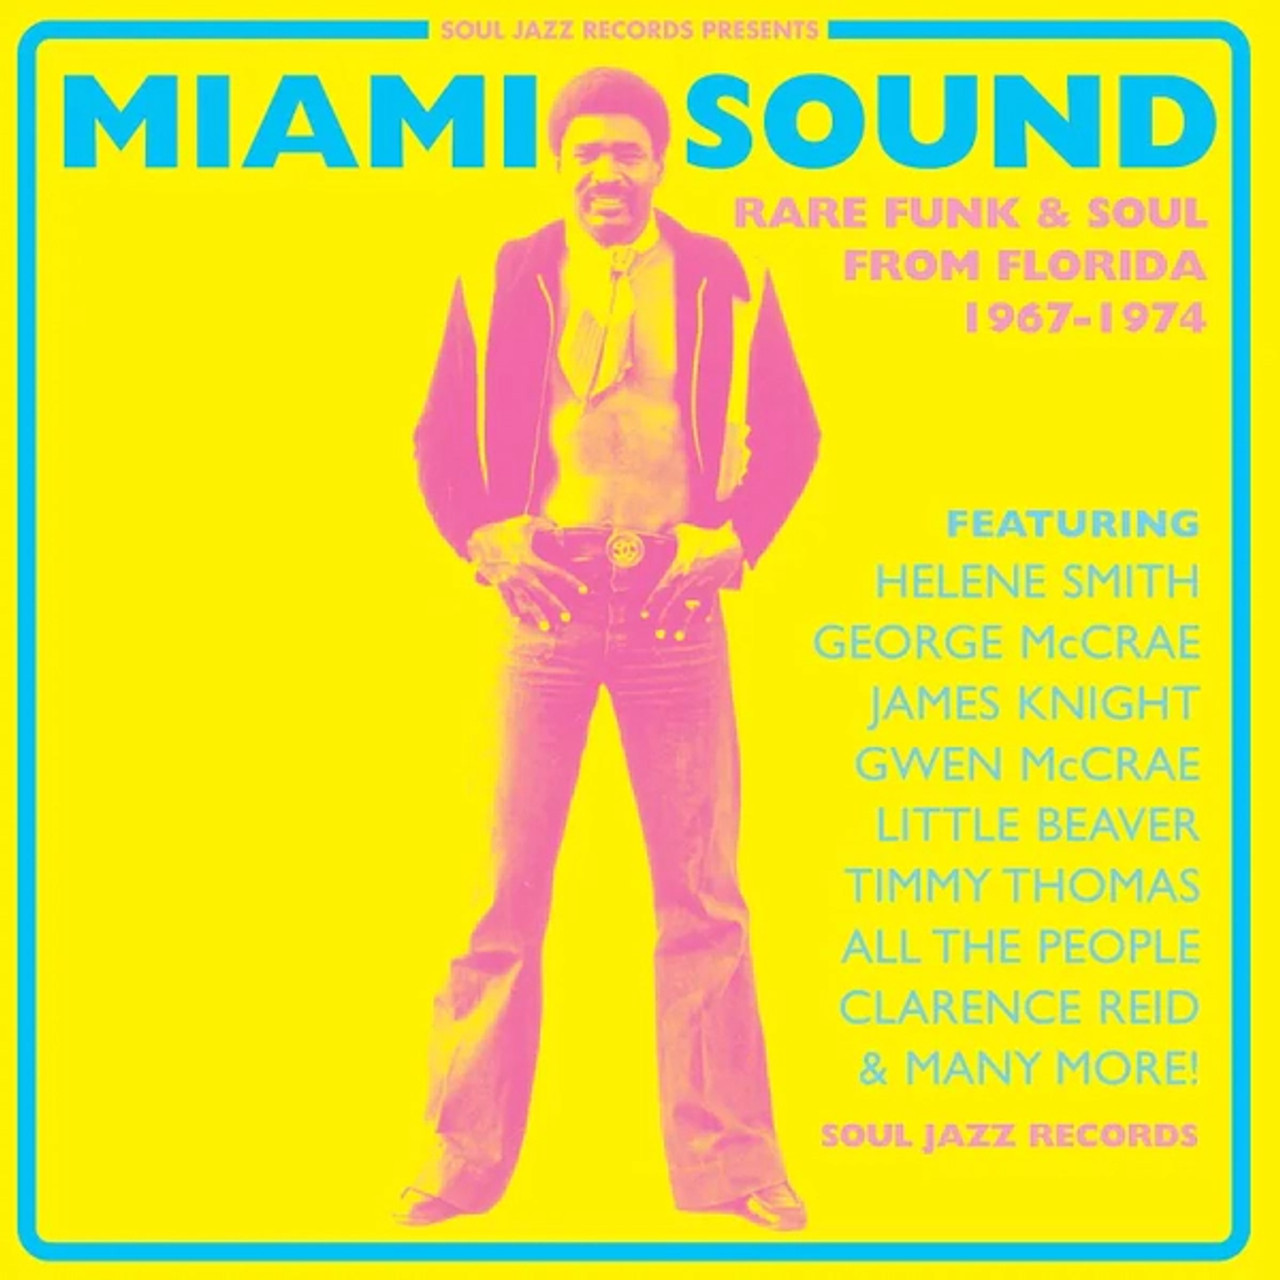 Miami Sound 1967-1974